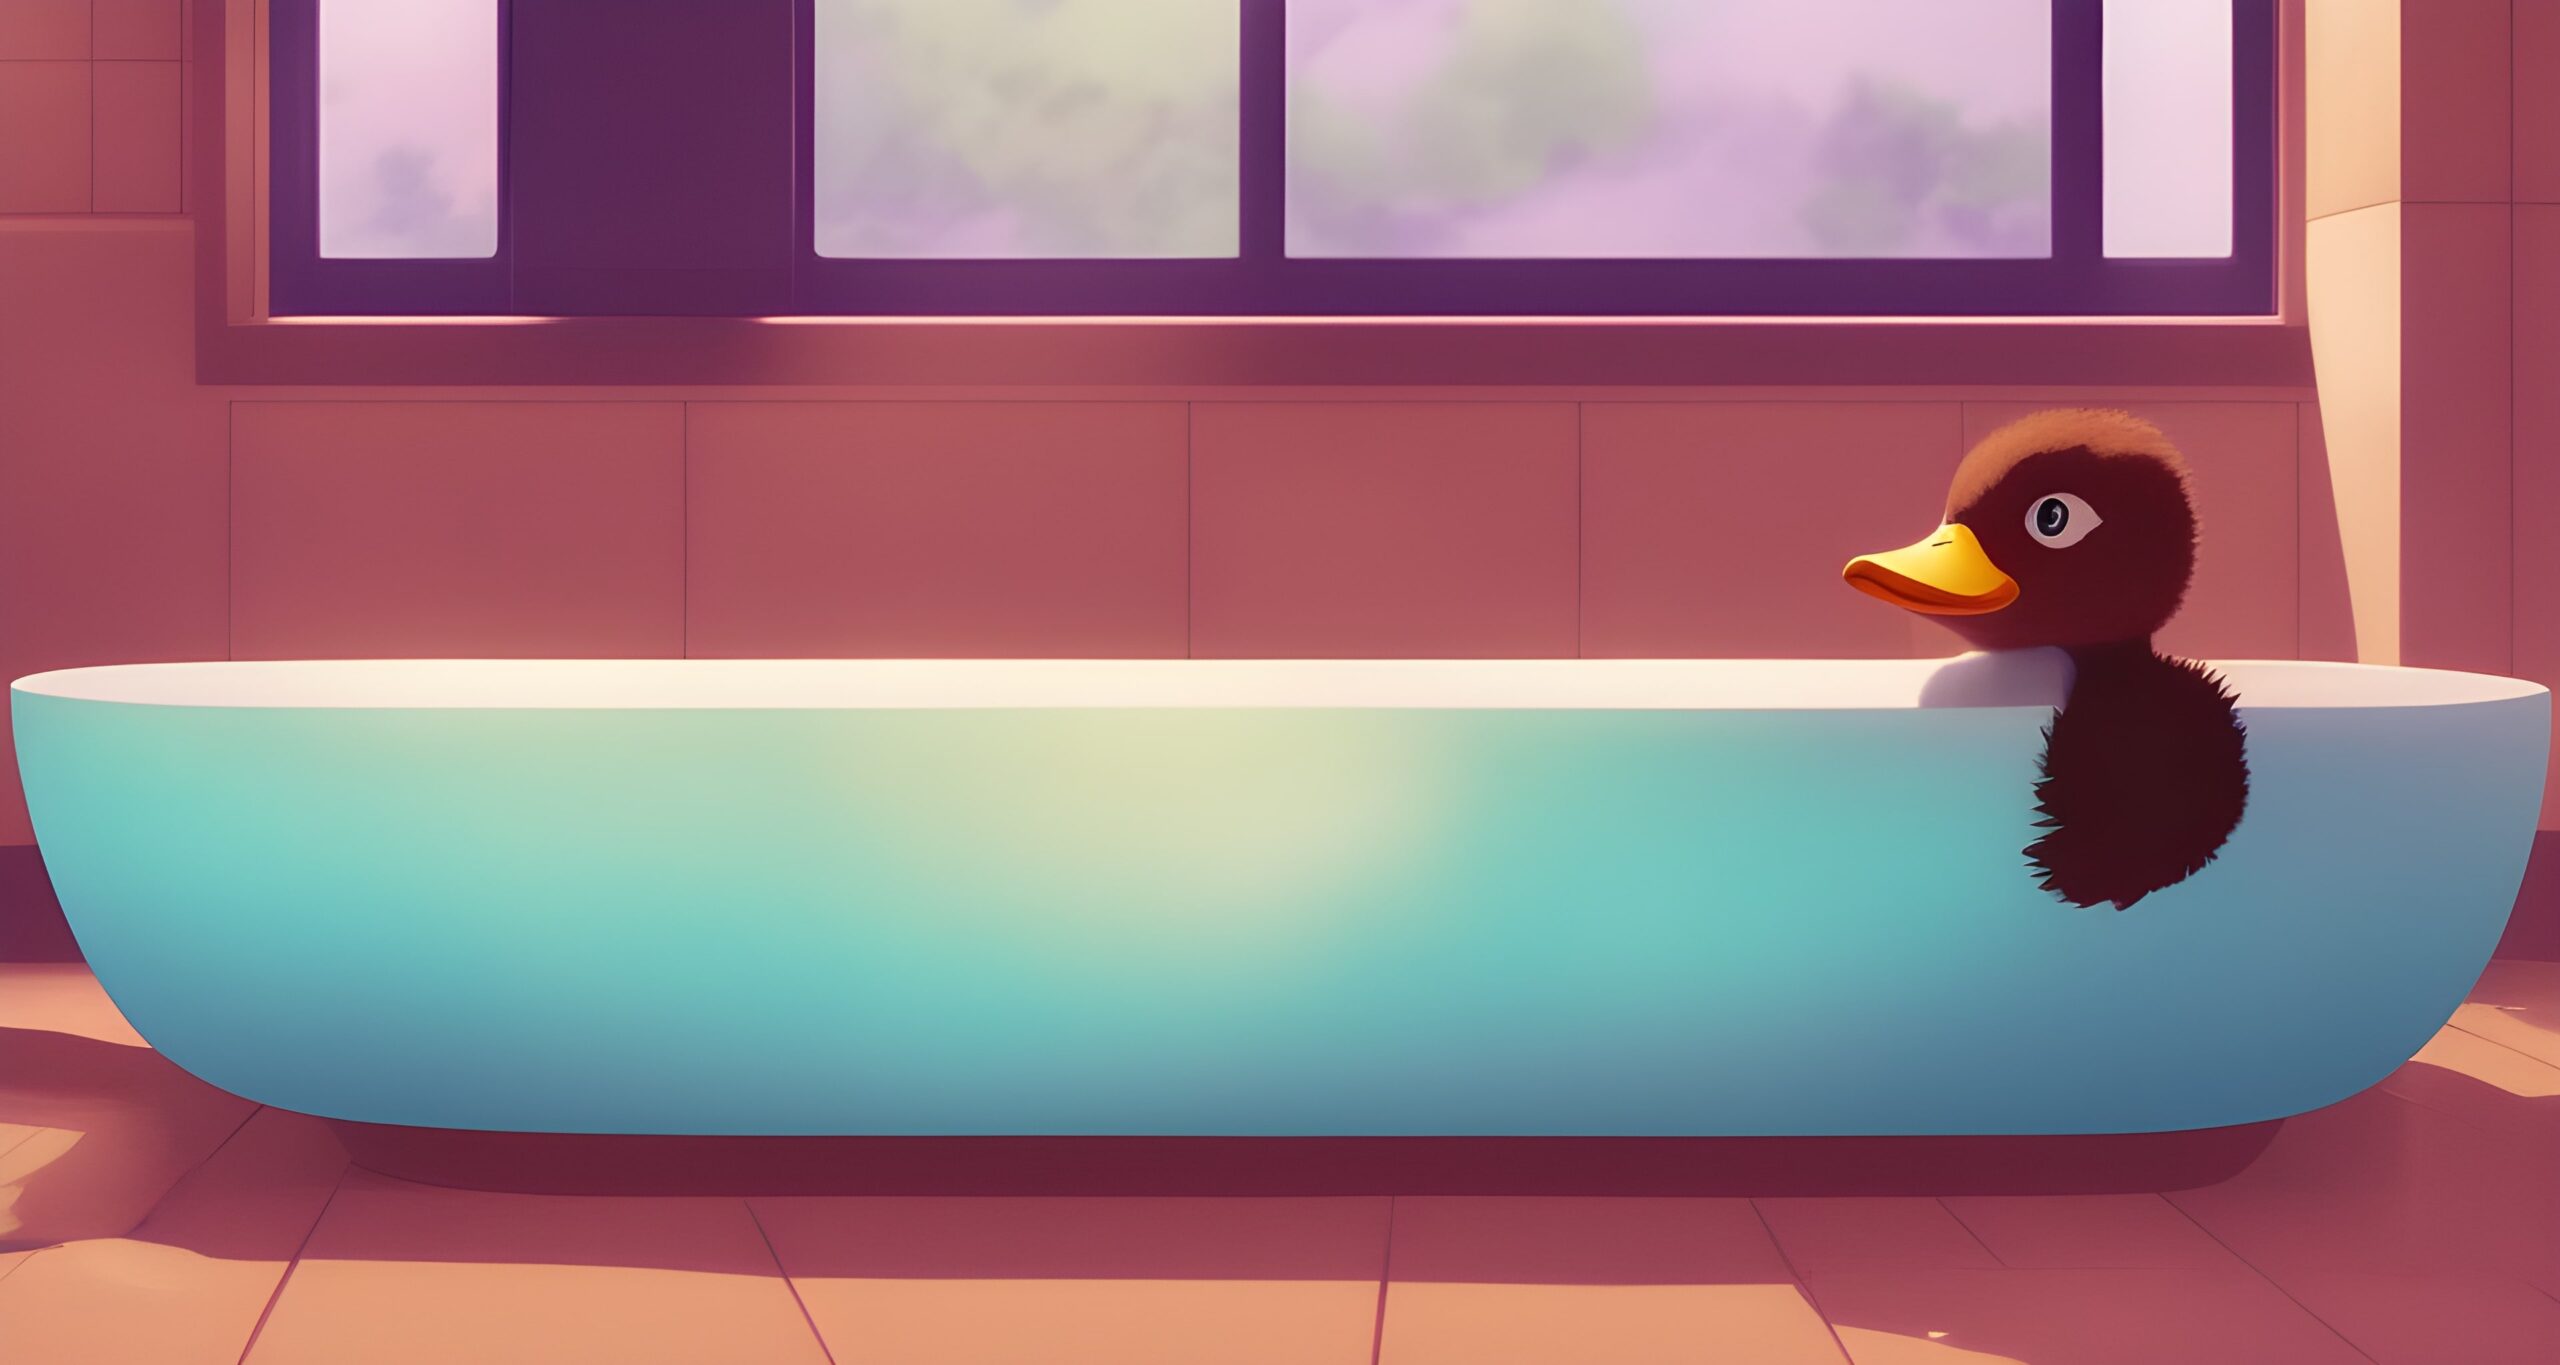 Black Duckling in a Bathtub